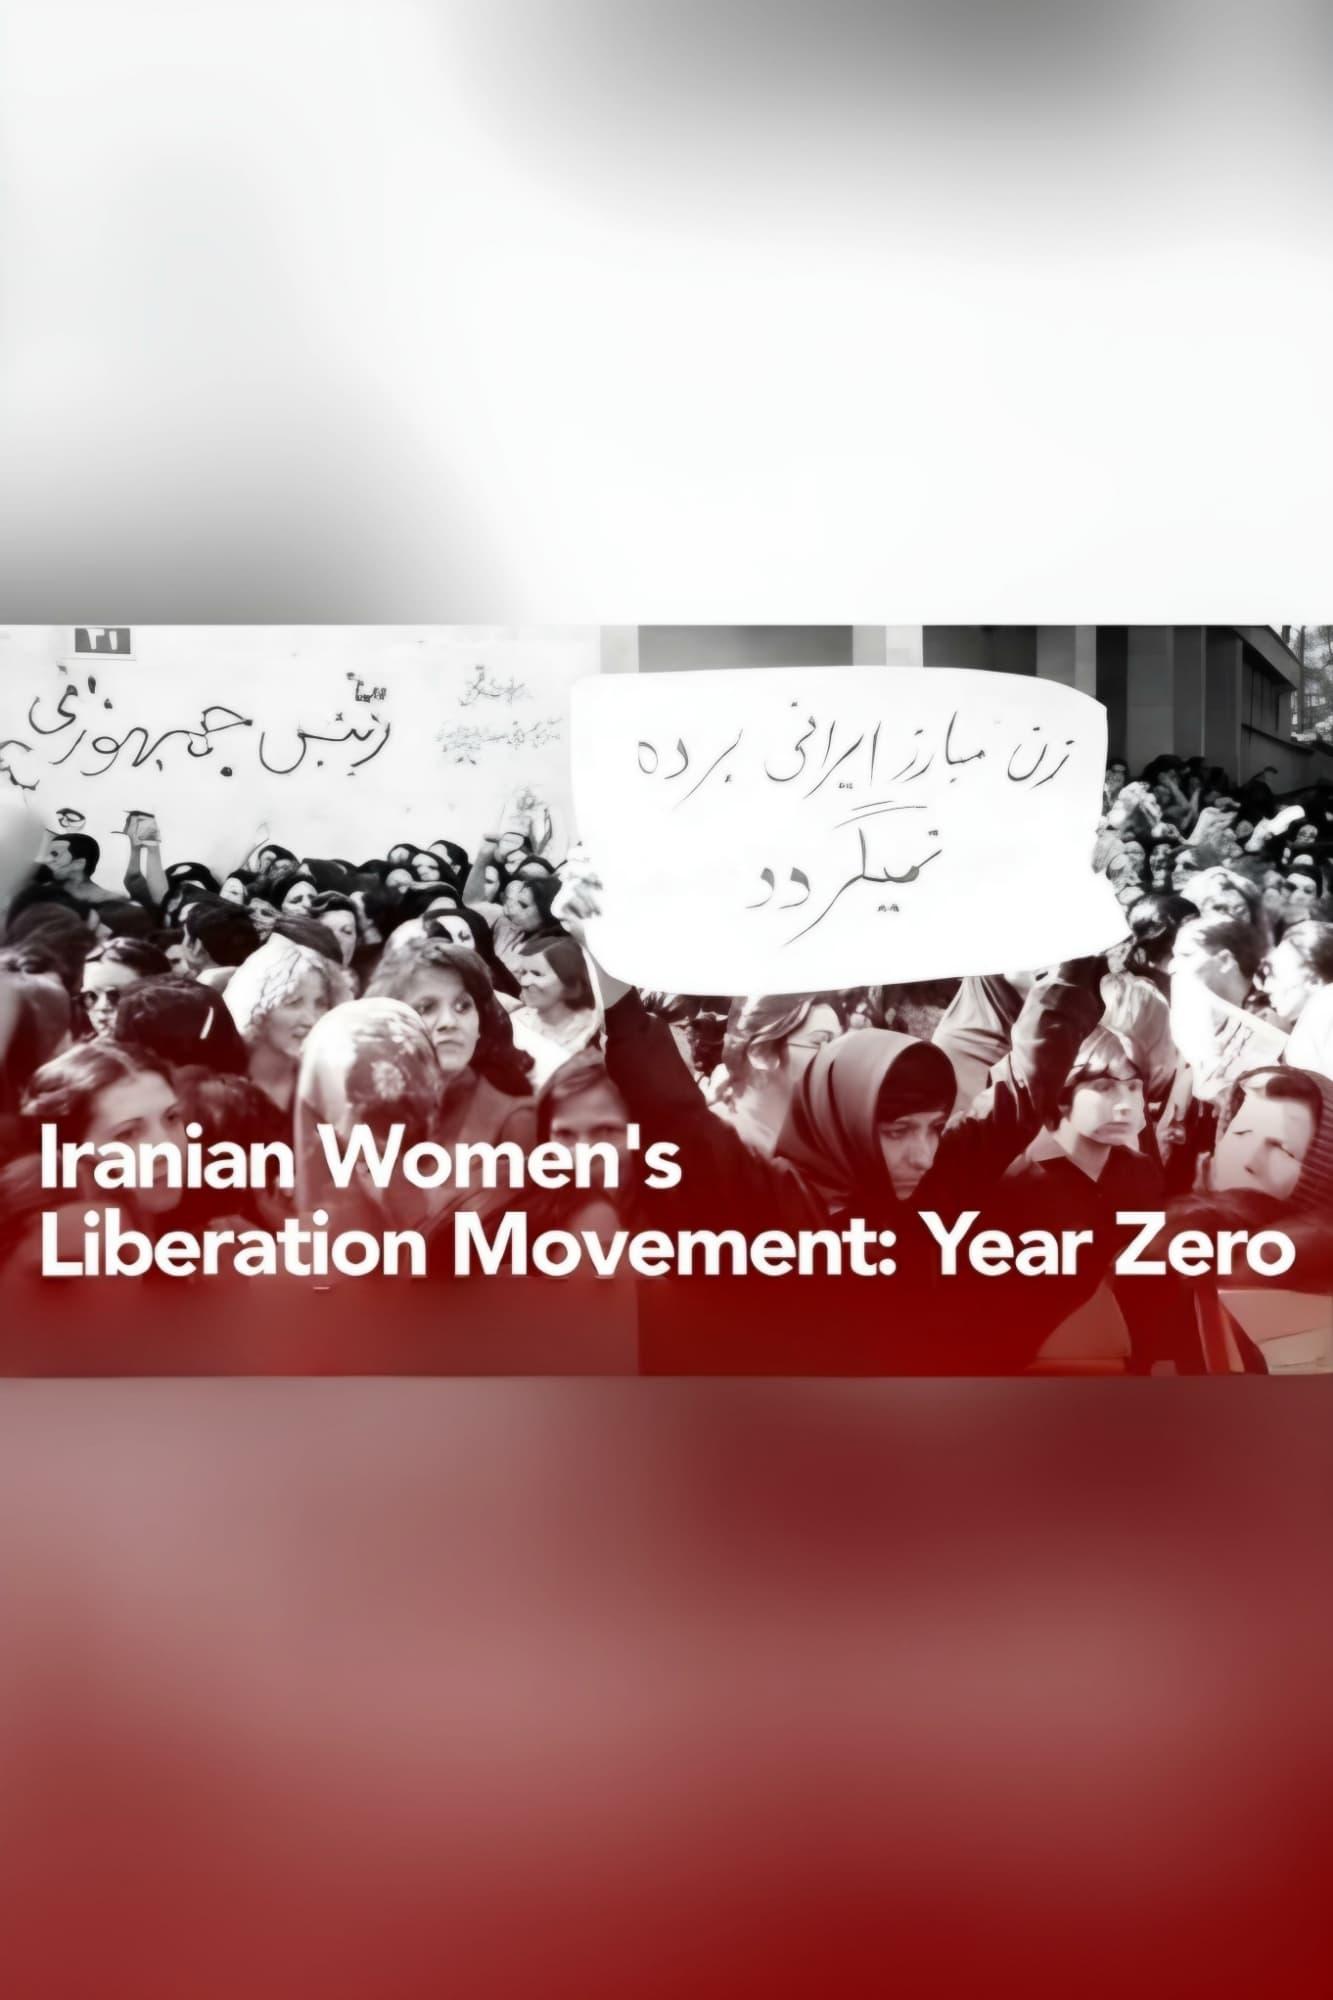 Iranian Women's Liberation Movement: Year Zero poster